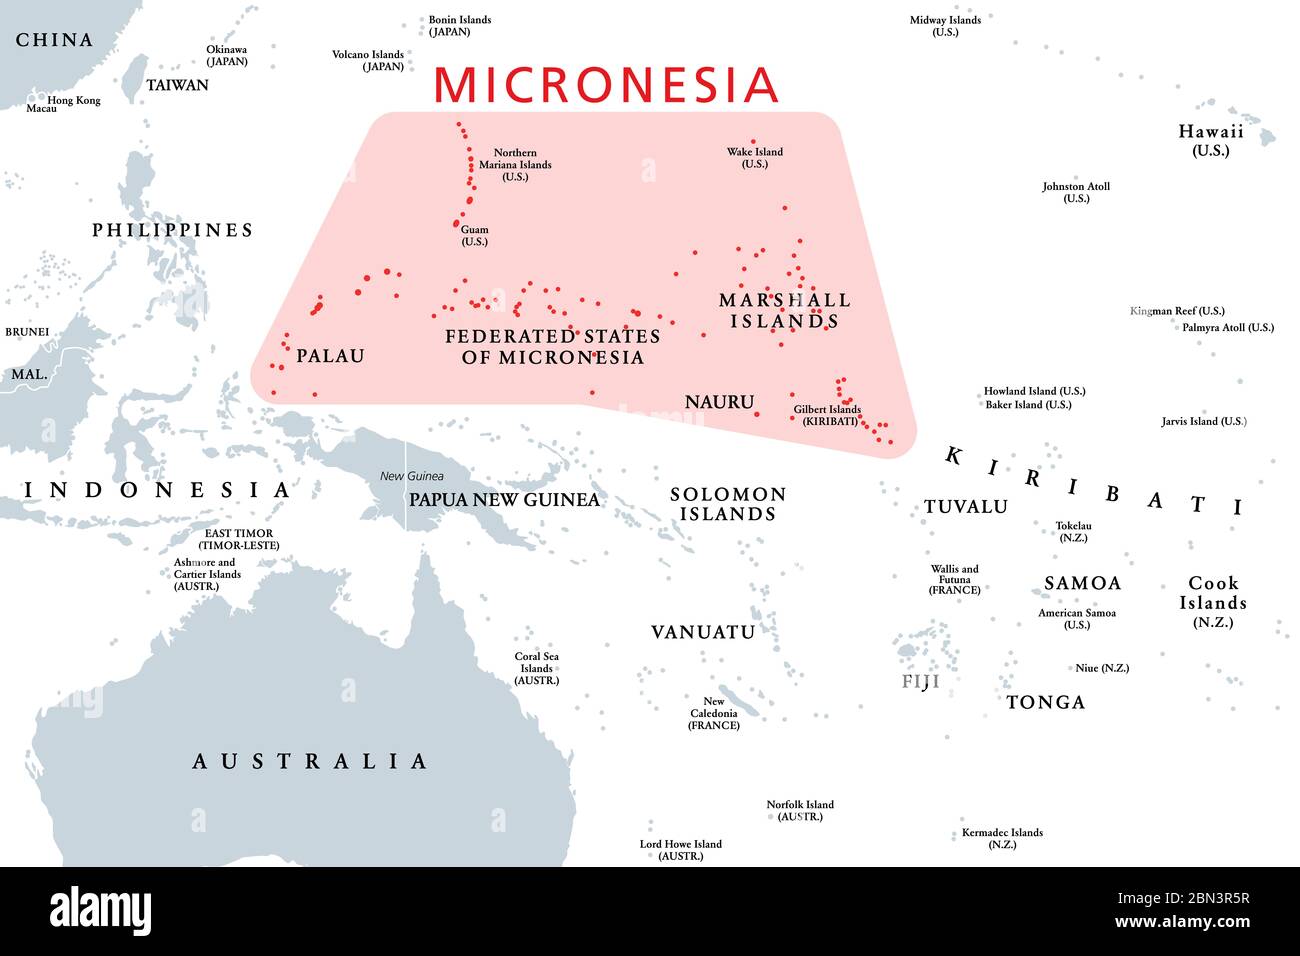 Micronesia, sottoregione dell'Oceania, mappa politica. Composto da migliaia di piccole isole nell'Oceano Pacifico occidentale vicino alla Polinesia e Melanesia. Foto Stock